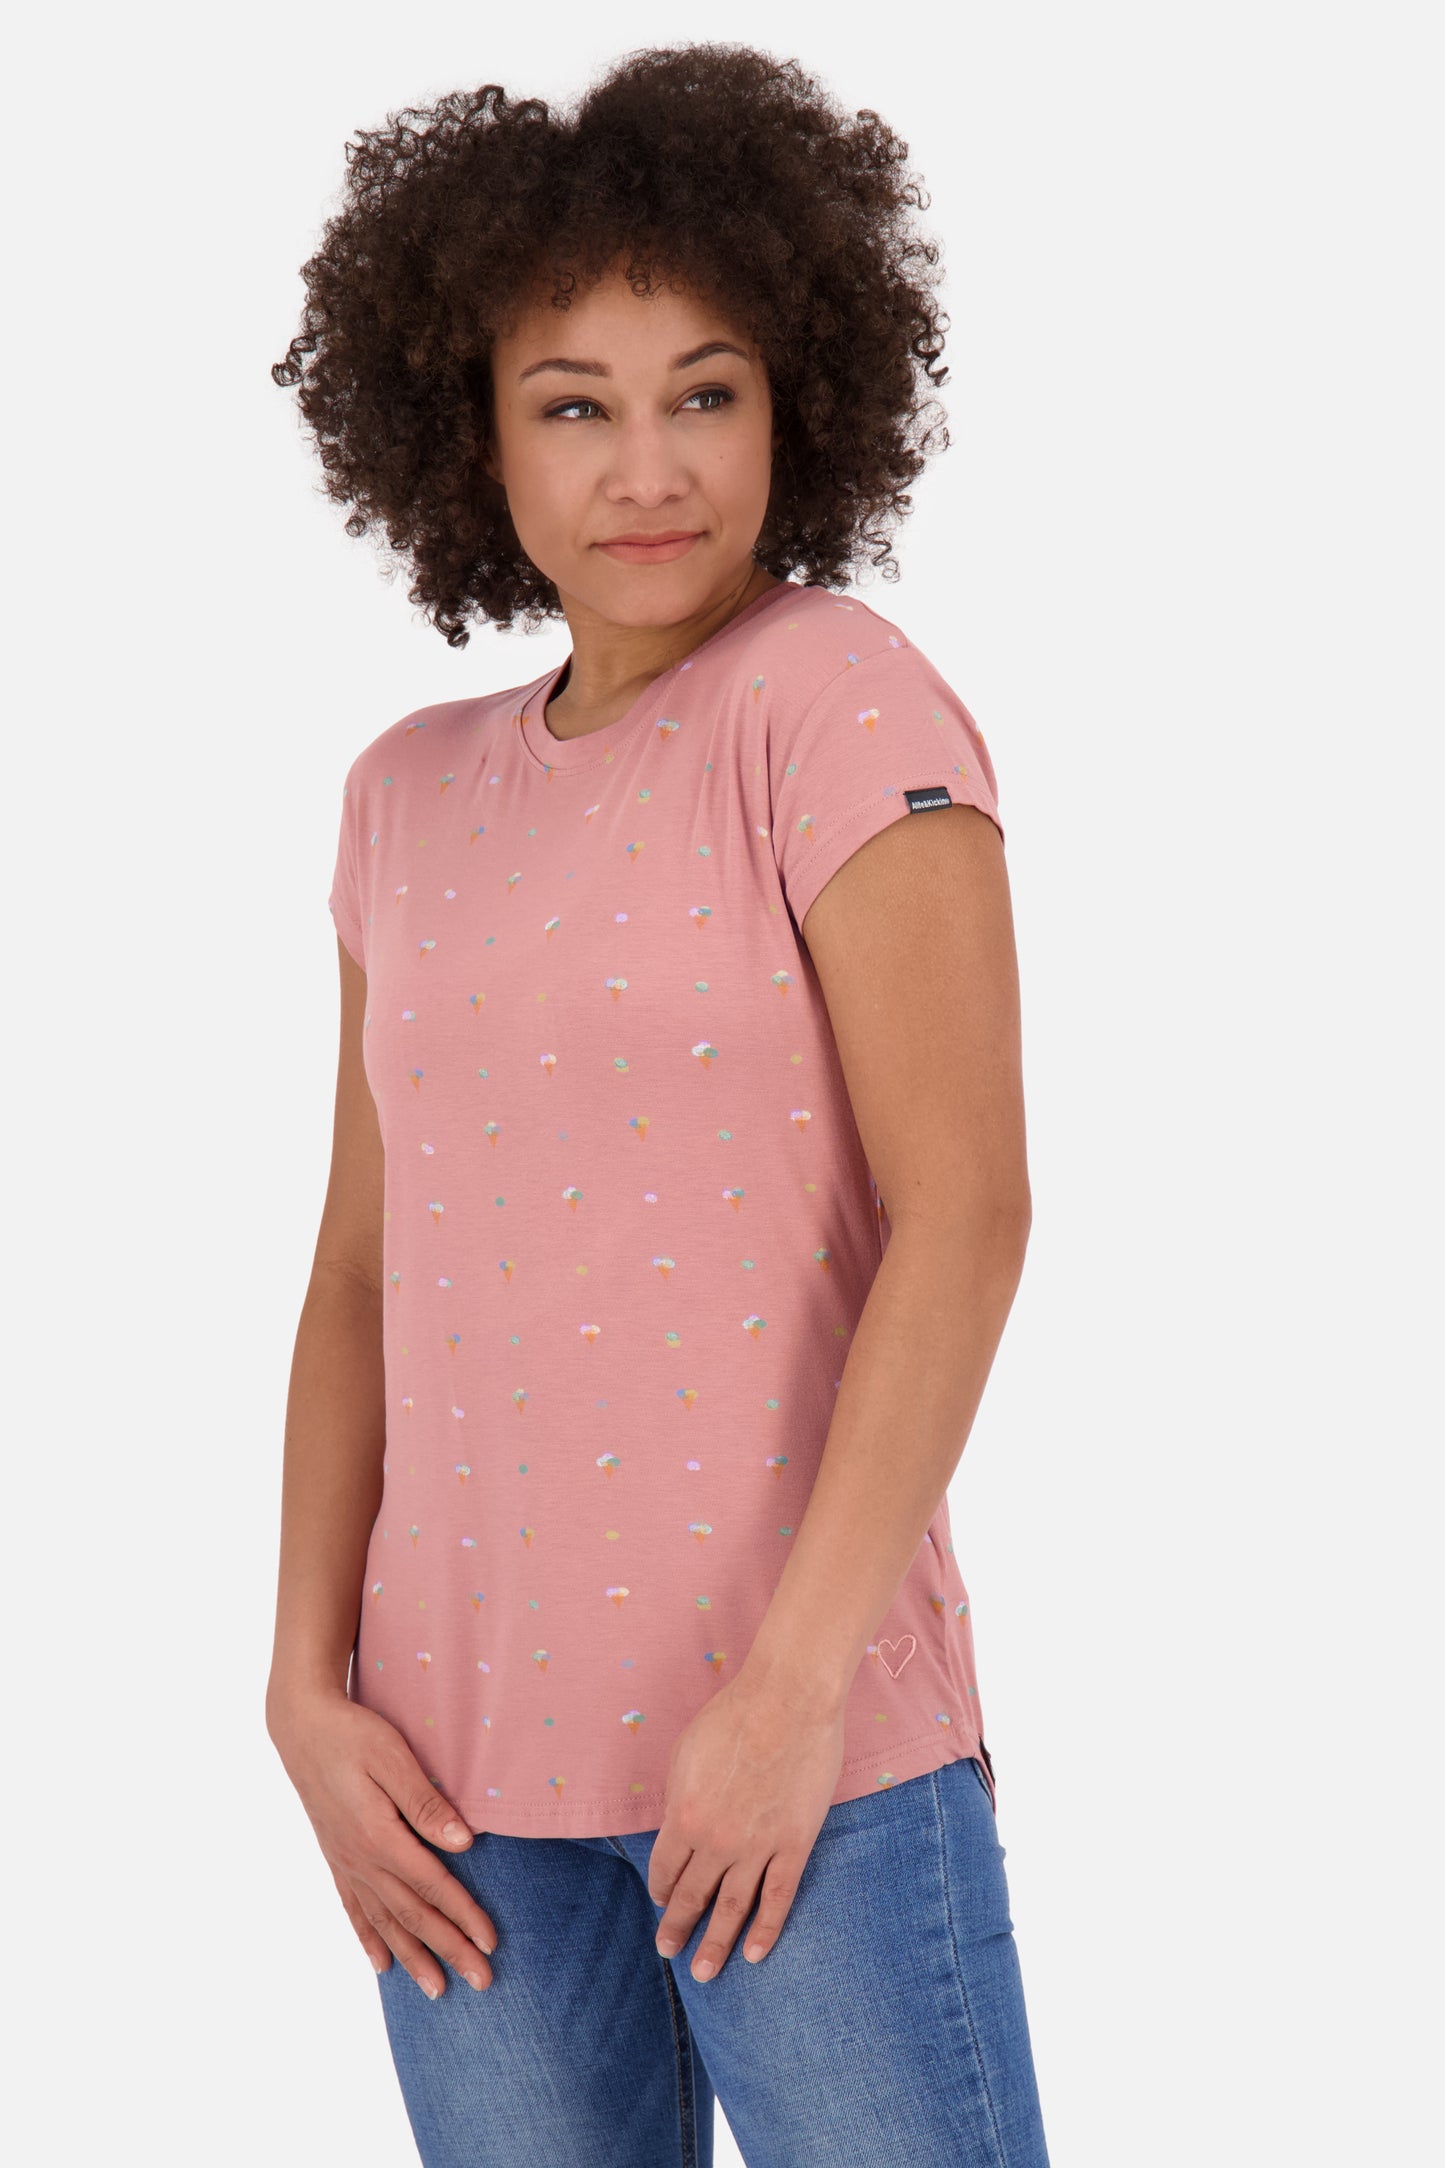 Sommerliches Damen-Shirt MimmyAK B - Verspielte Details und femininer Schnitt Rosa